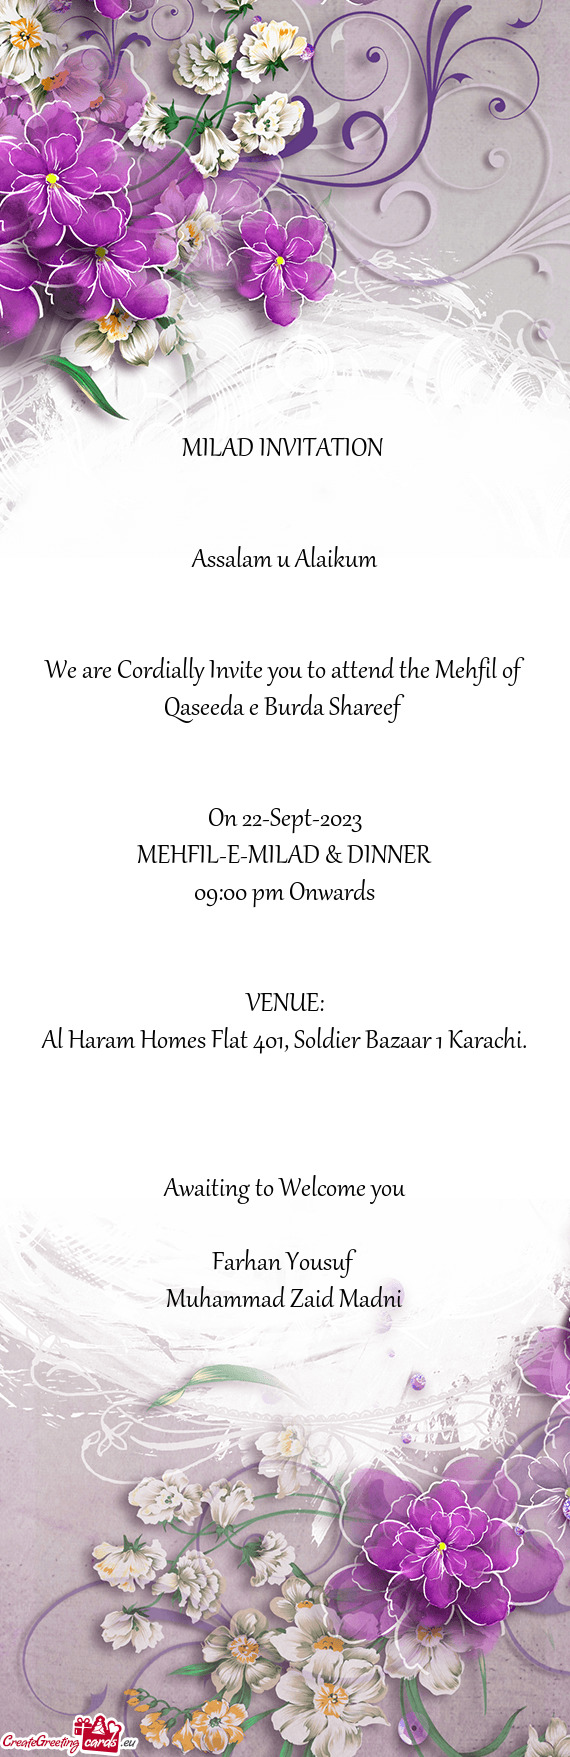 We are Cordially Invite you to attend the Mehfil of Qaseeda e Burda Shareef